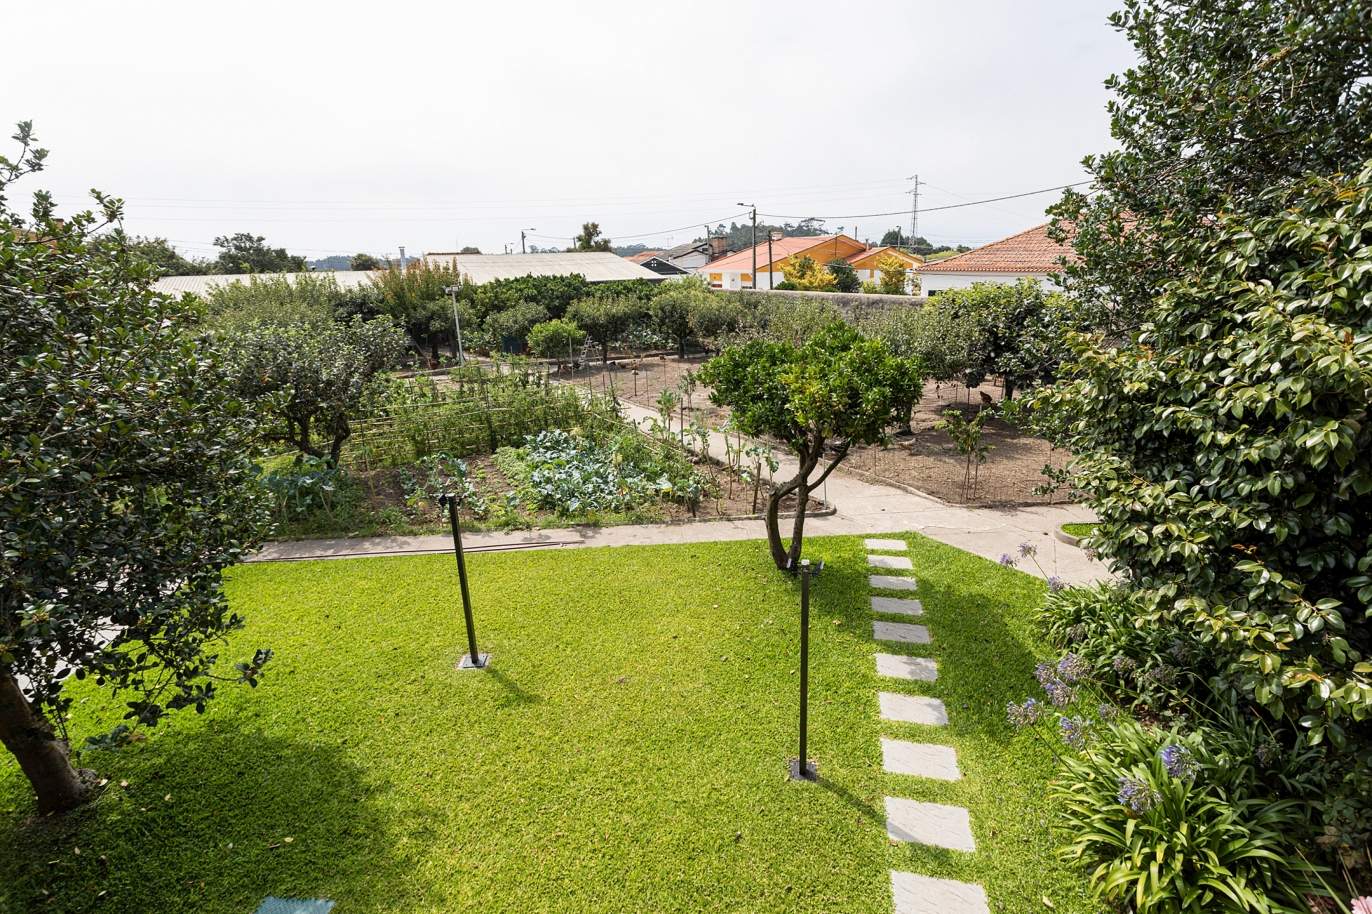 Moradia renovada com jardim, para venda, próxima das praias em Lavra, Porto, Portugal_177144